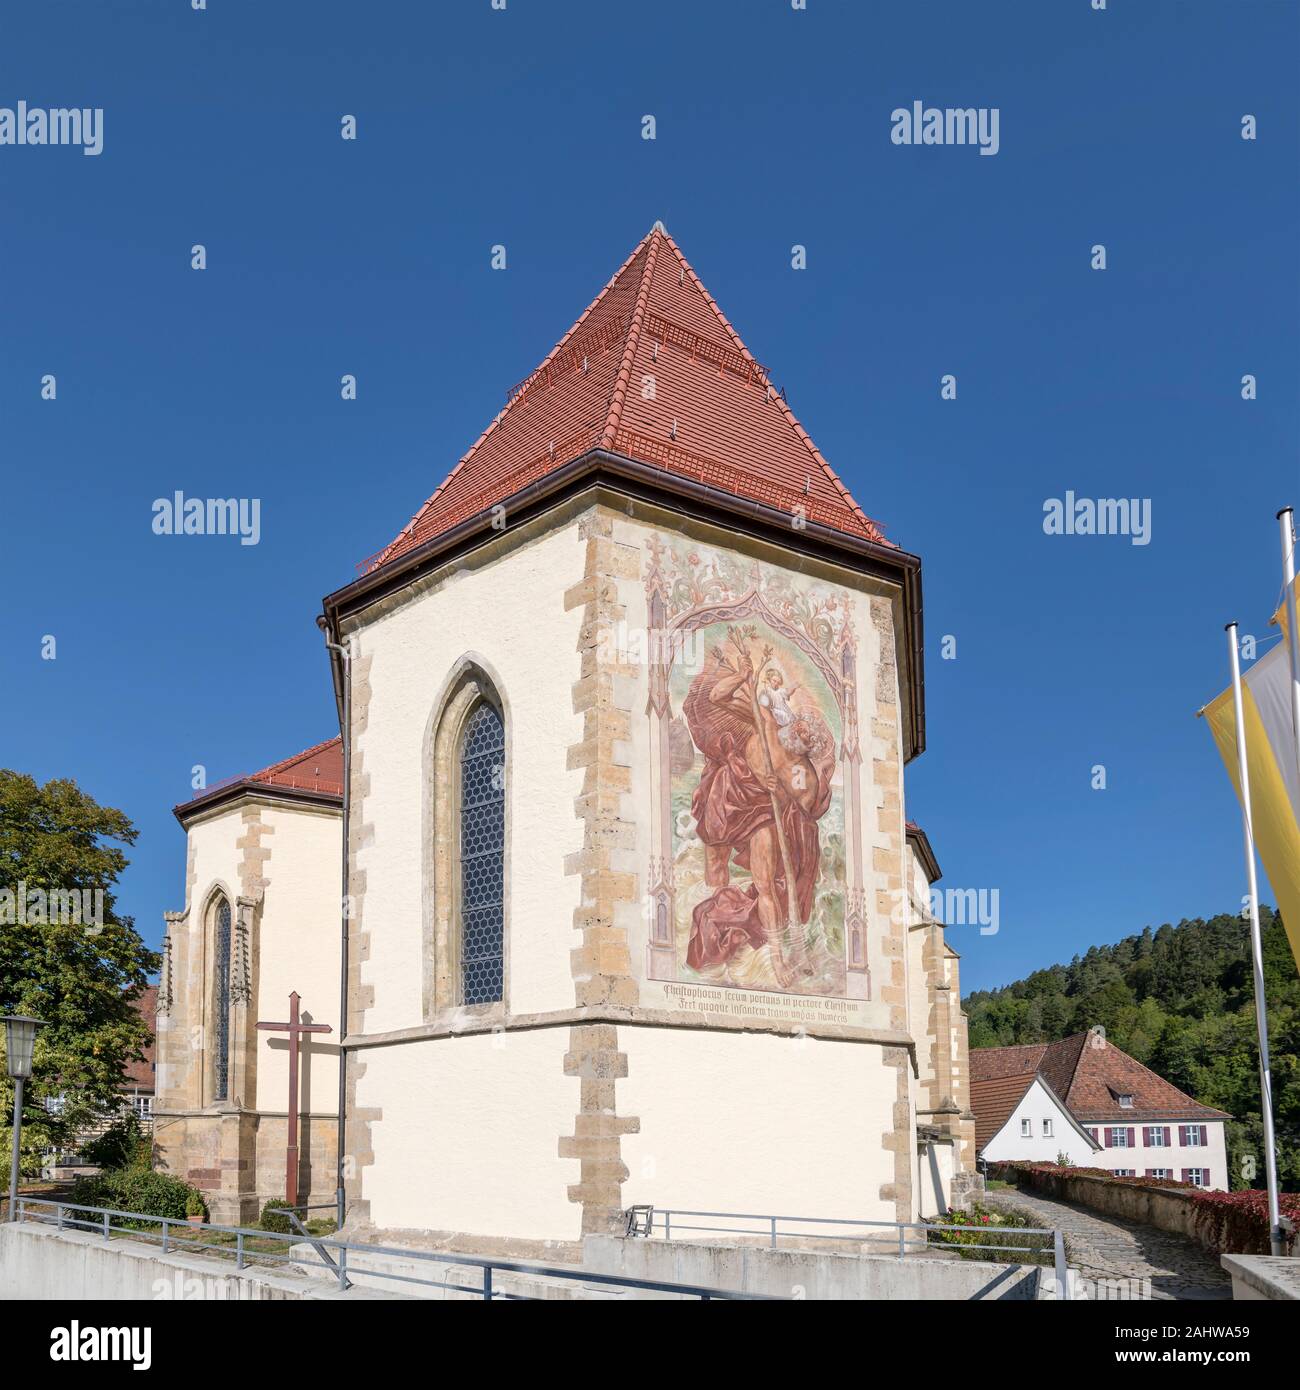 Malte Apsis von "Heilig Kreuz" barocke Kirche, im Sommer Schuss helles Licht in Horb am Neckar, Baden Wuttenberg, Deutschland Stockfoto